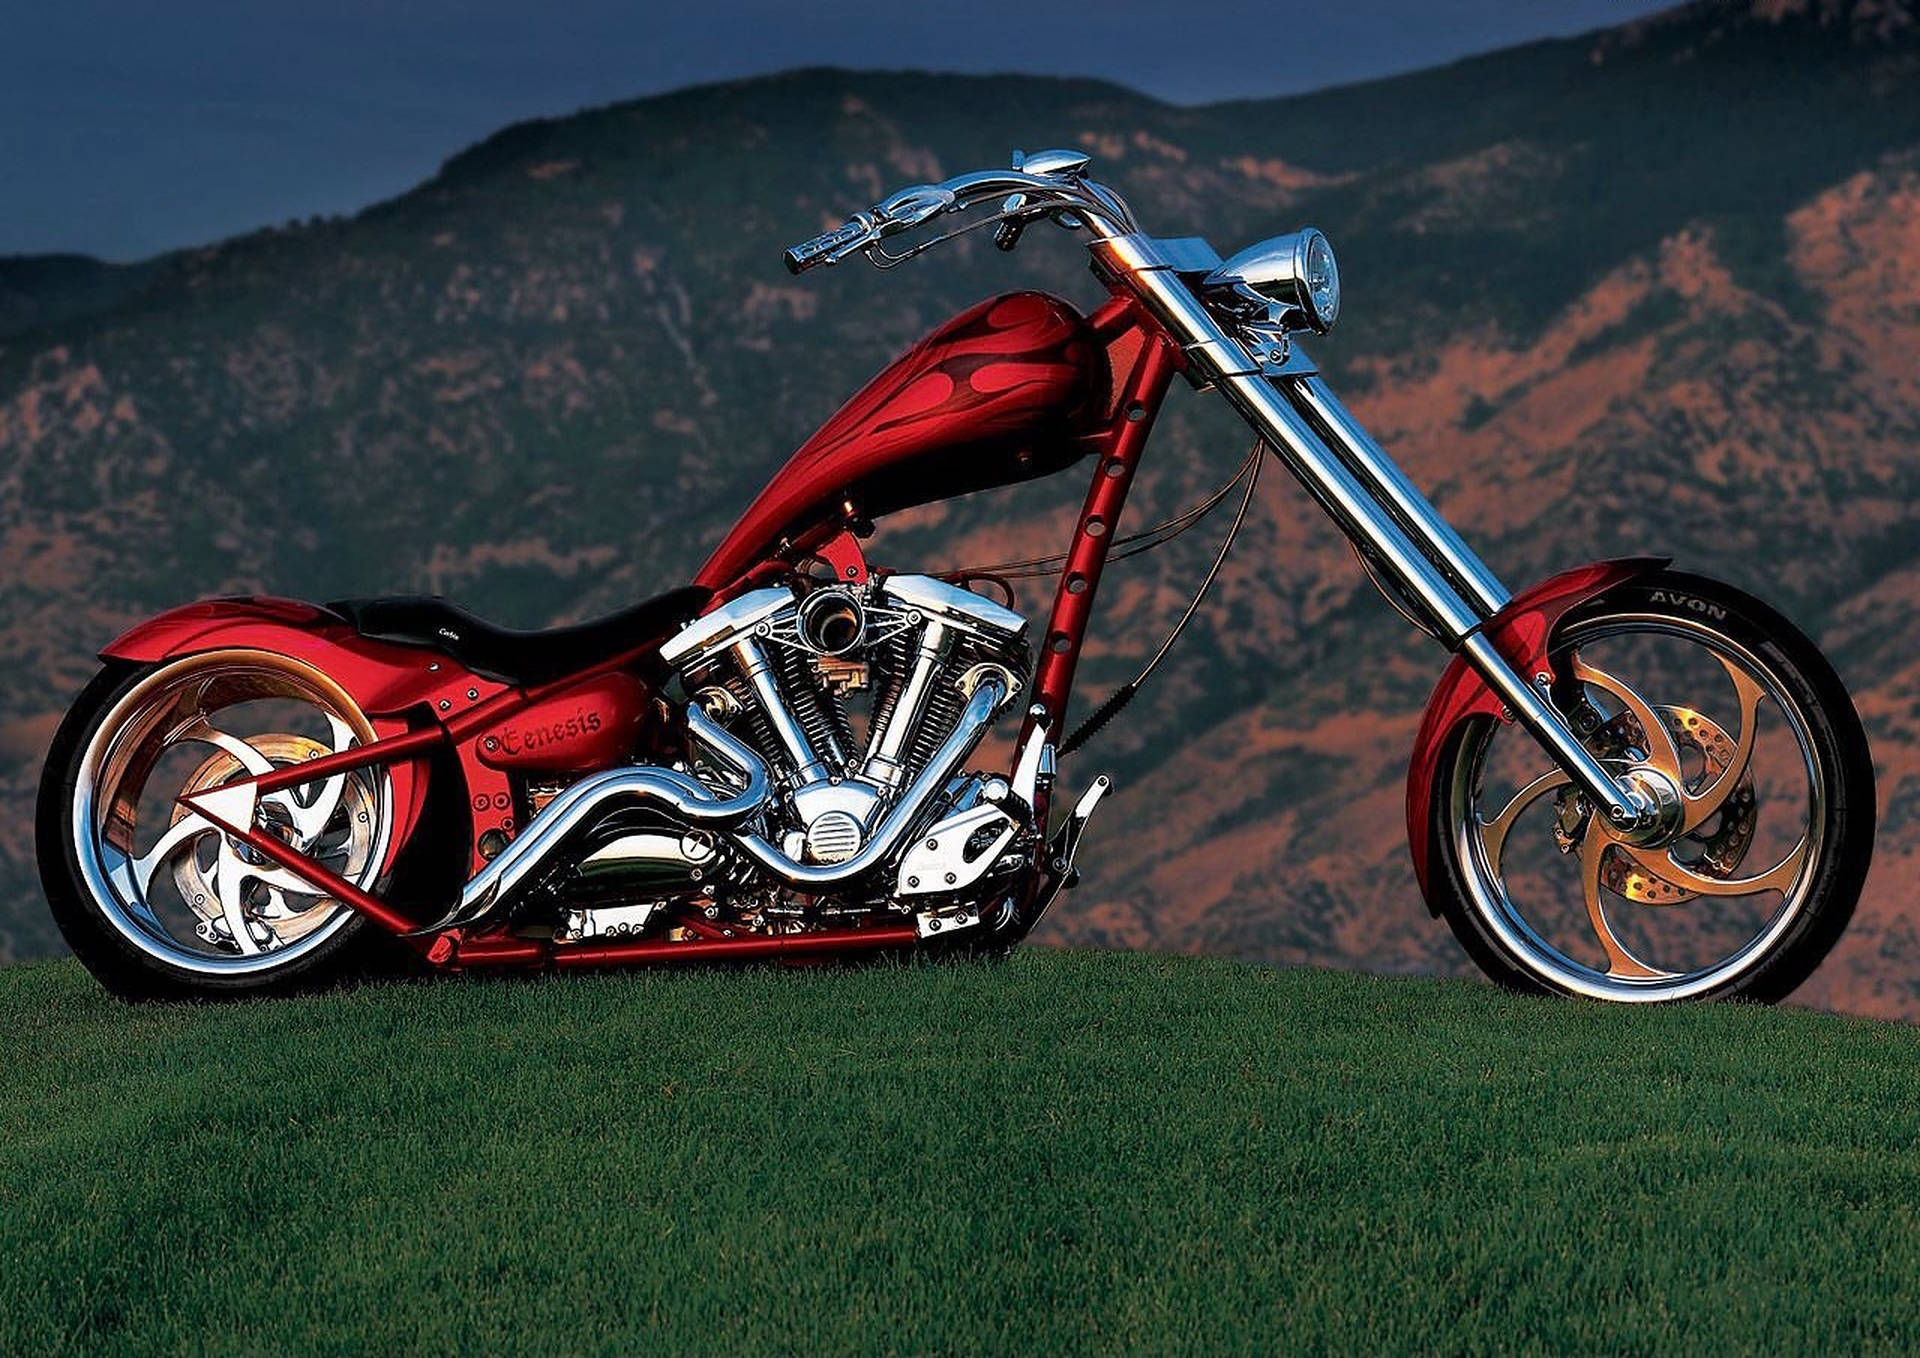 Immagini Della Motocicletta Chopper